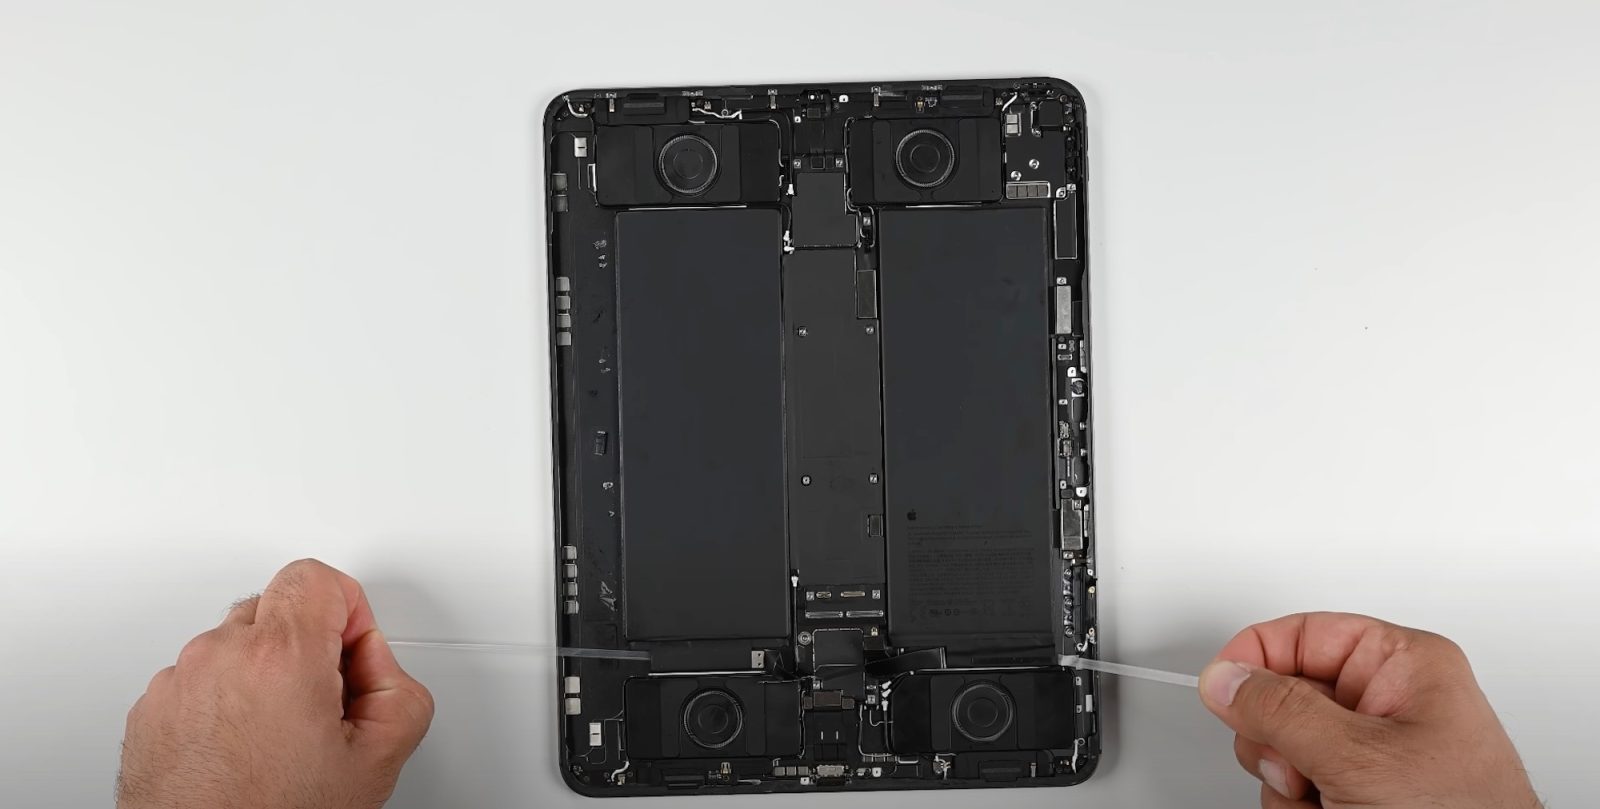 Der Teardown von iFixit zeigt eine wesentliche Änderung in der Reparierbarkeit des M4 iPad Pro